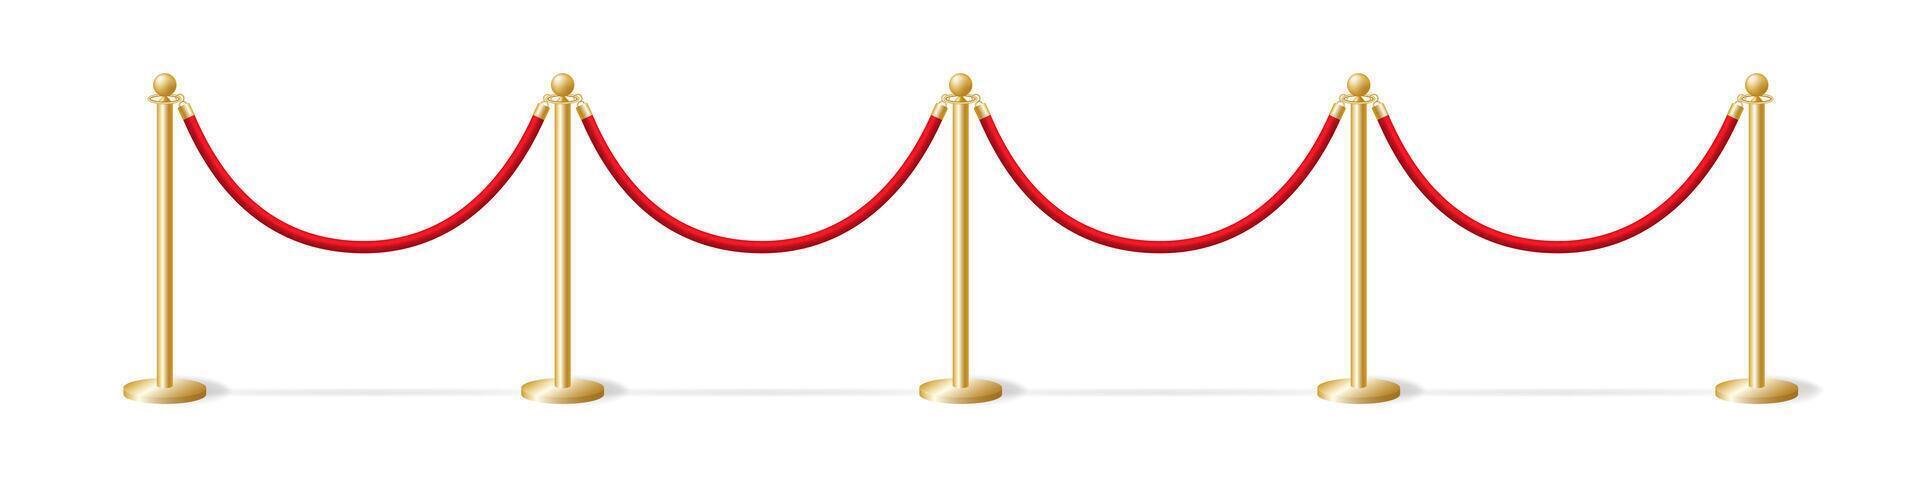 largo Esgrima oro bolardos con rojo cuerda modelo. seguridad barrera a solemne ceremonias y eventos. advertencia desde seguridad Servicio ese paso es cerrado vector